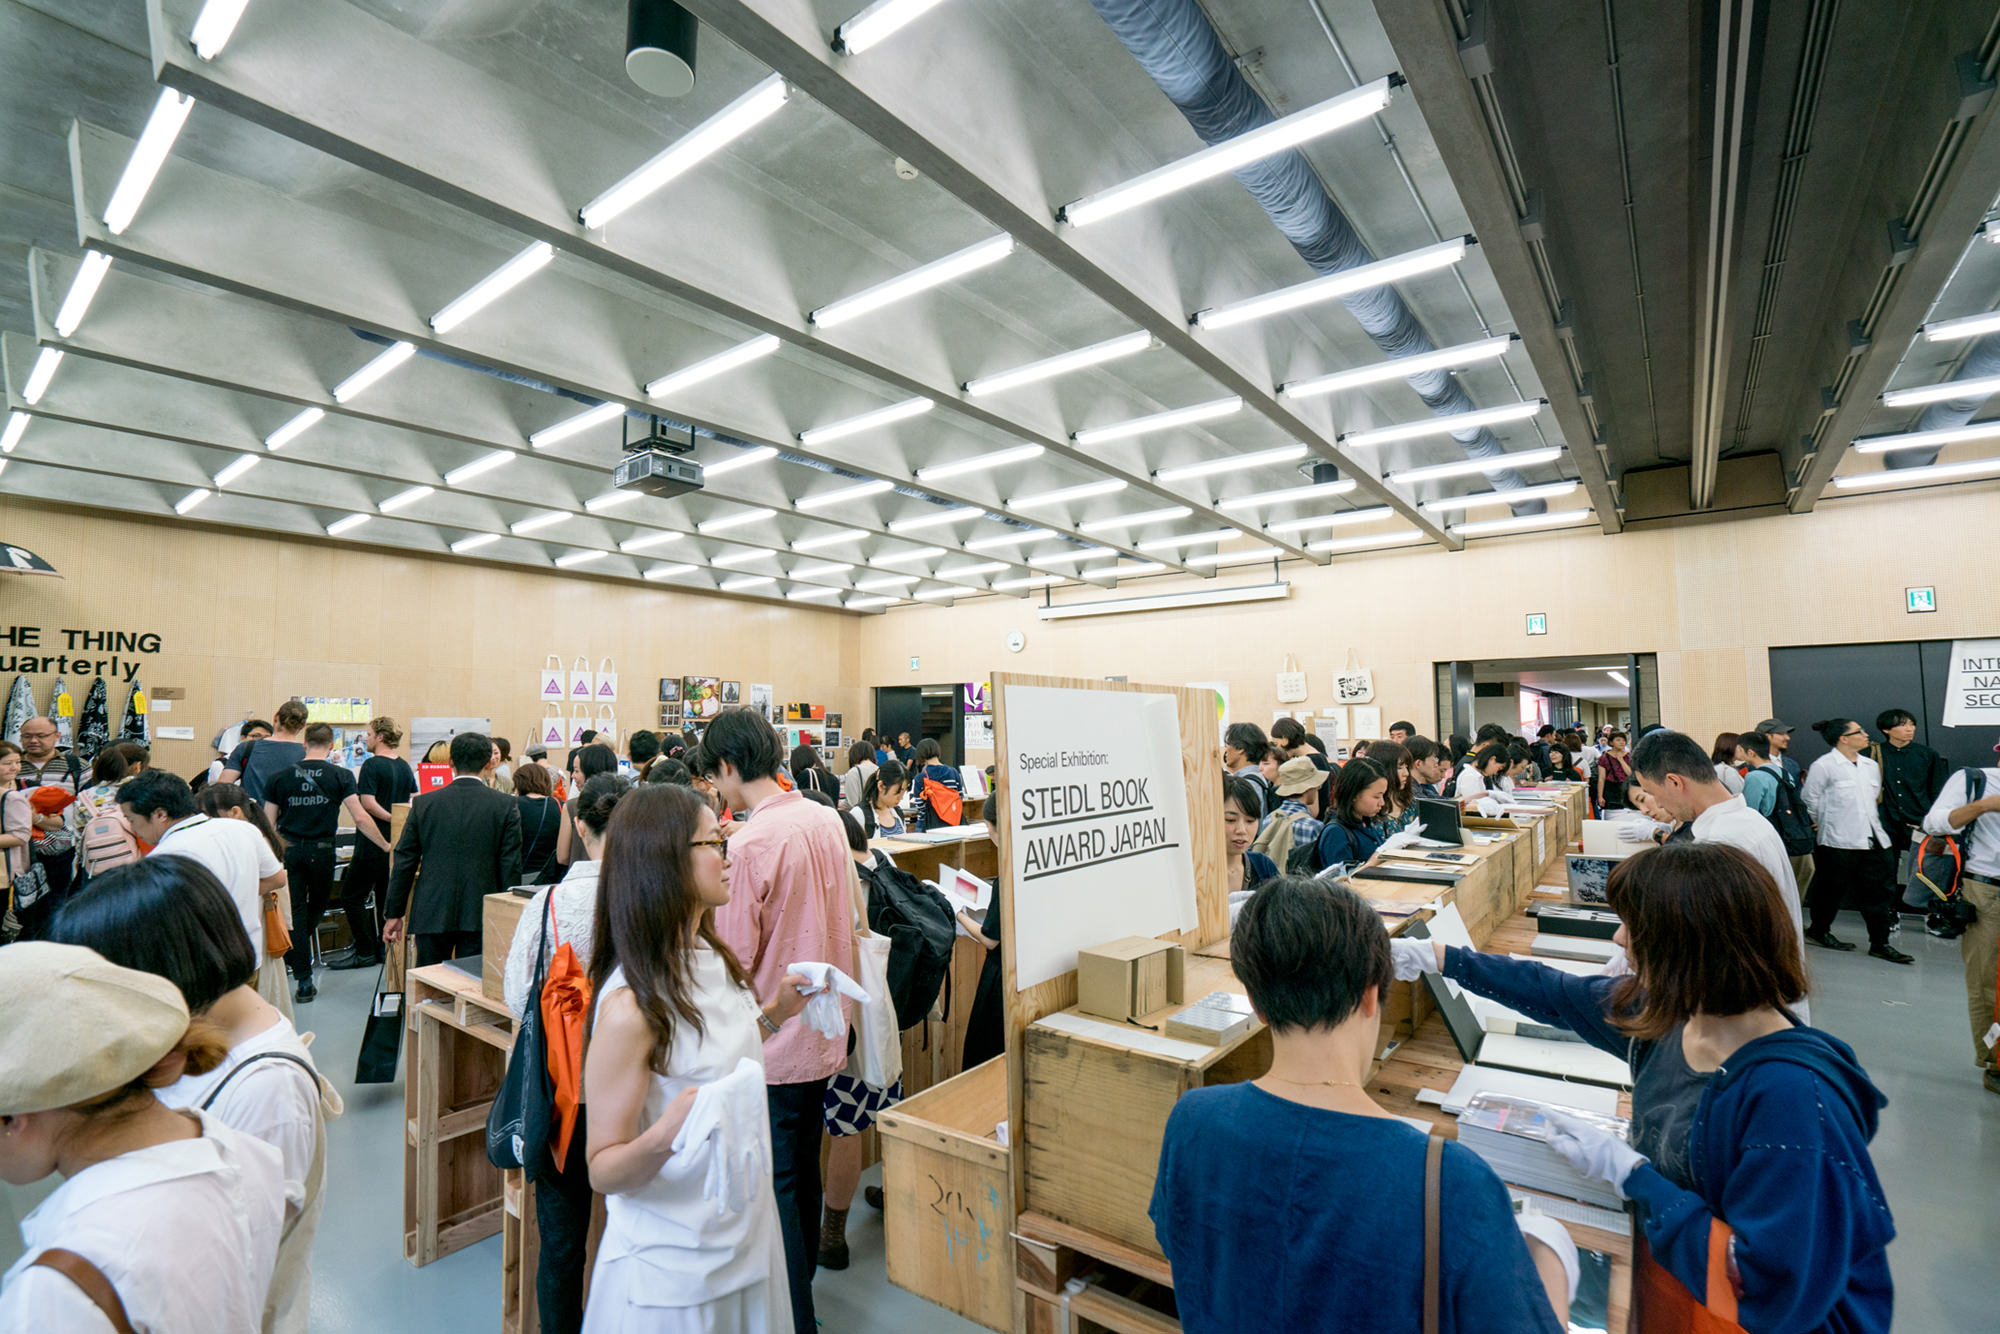 The Tokyo Art Book Fair Exhibitors